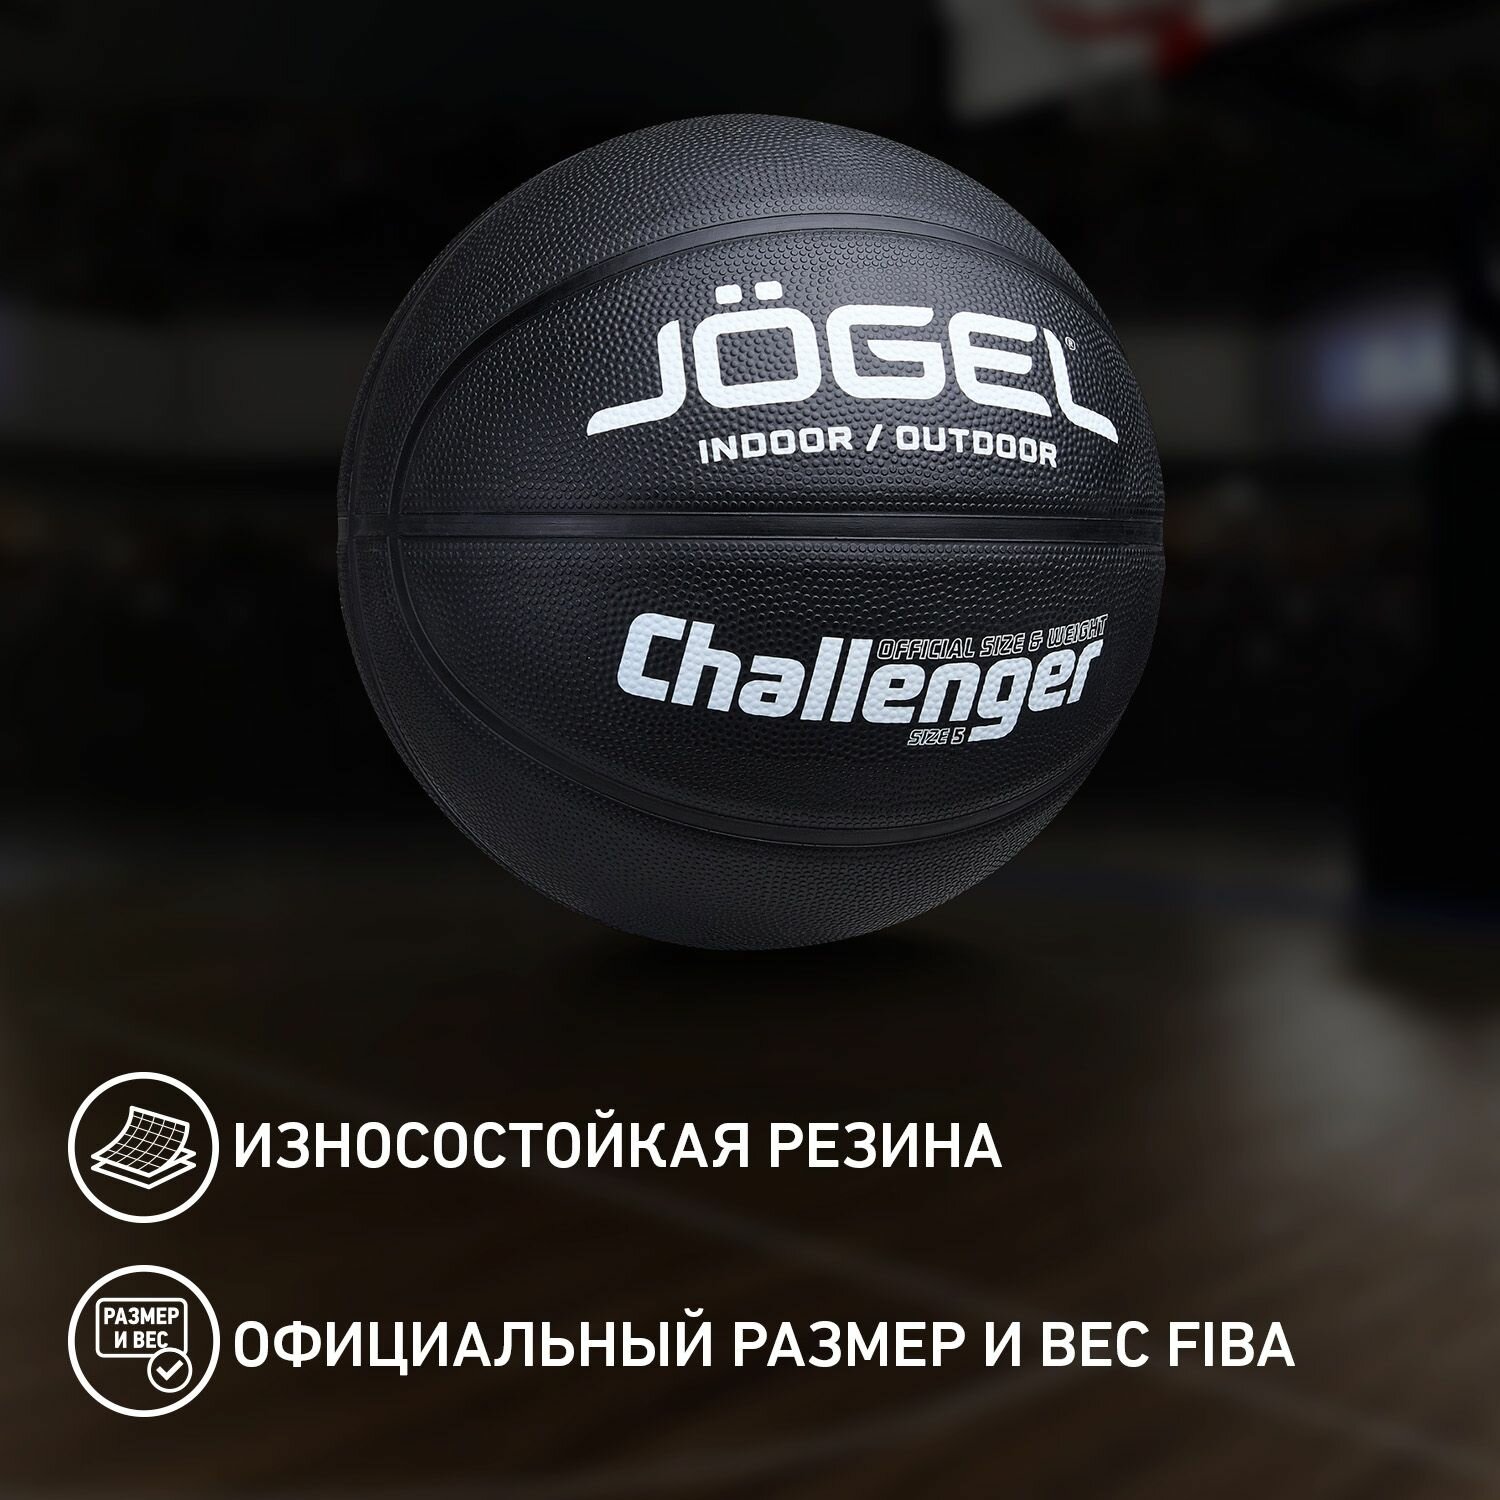 Баскетбольный мяч Jogel Challenger, цвет черный, размер 5